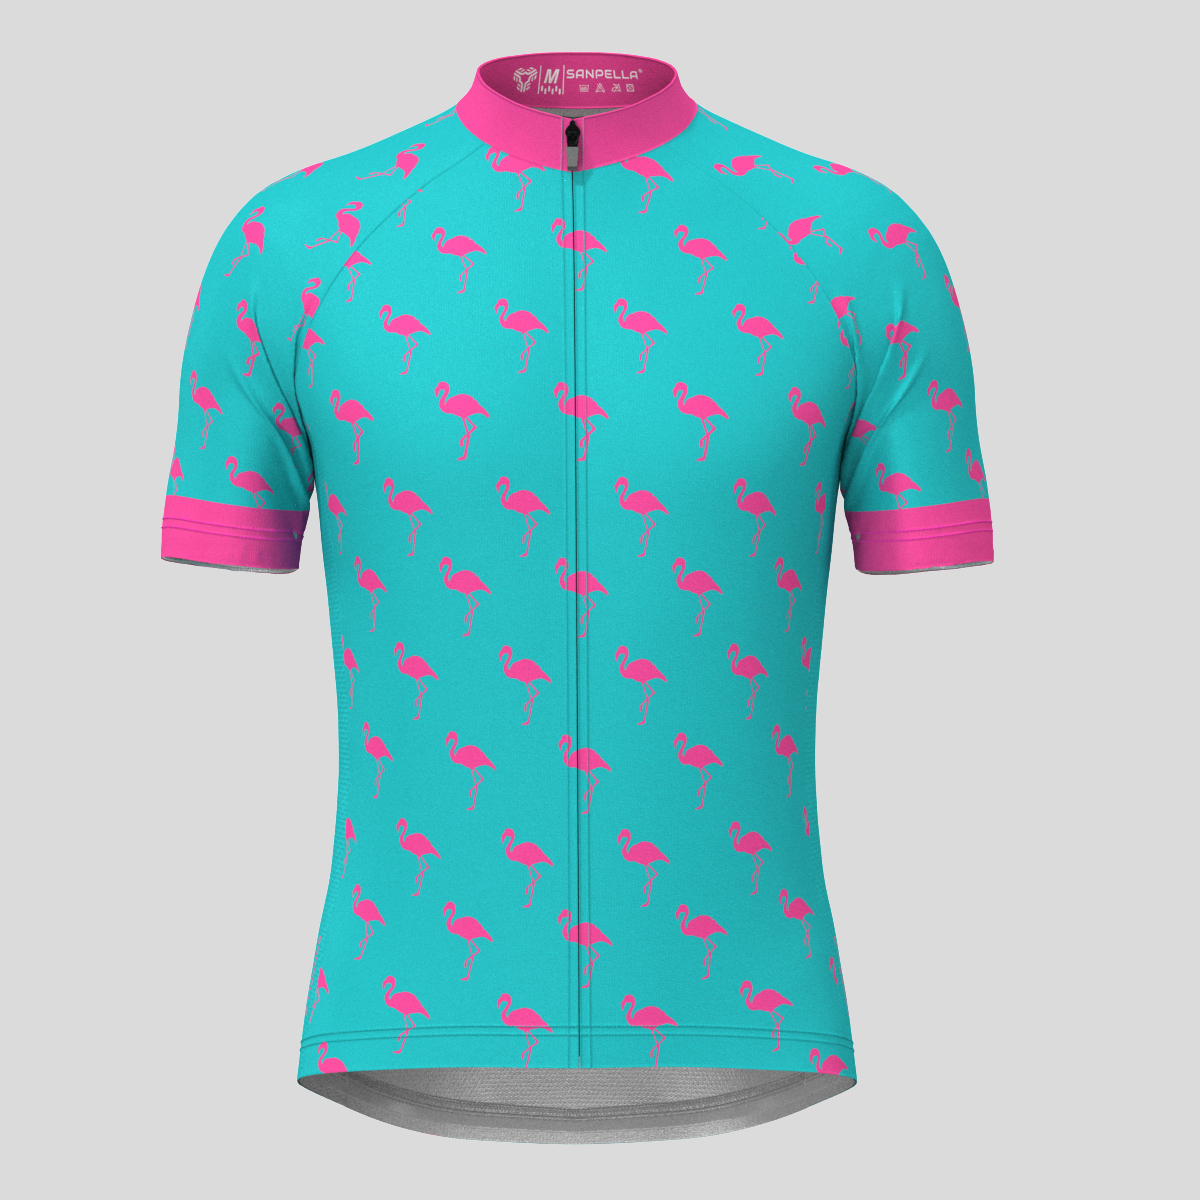 Flamingo Men's Cycling Cycling Jersey - Pink/Blue